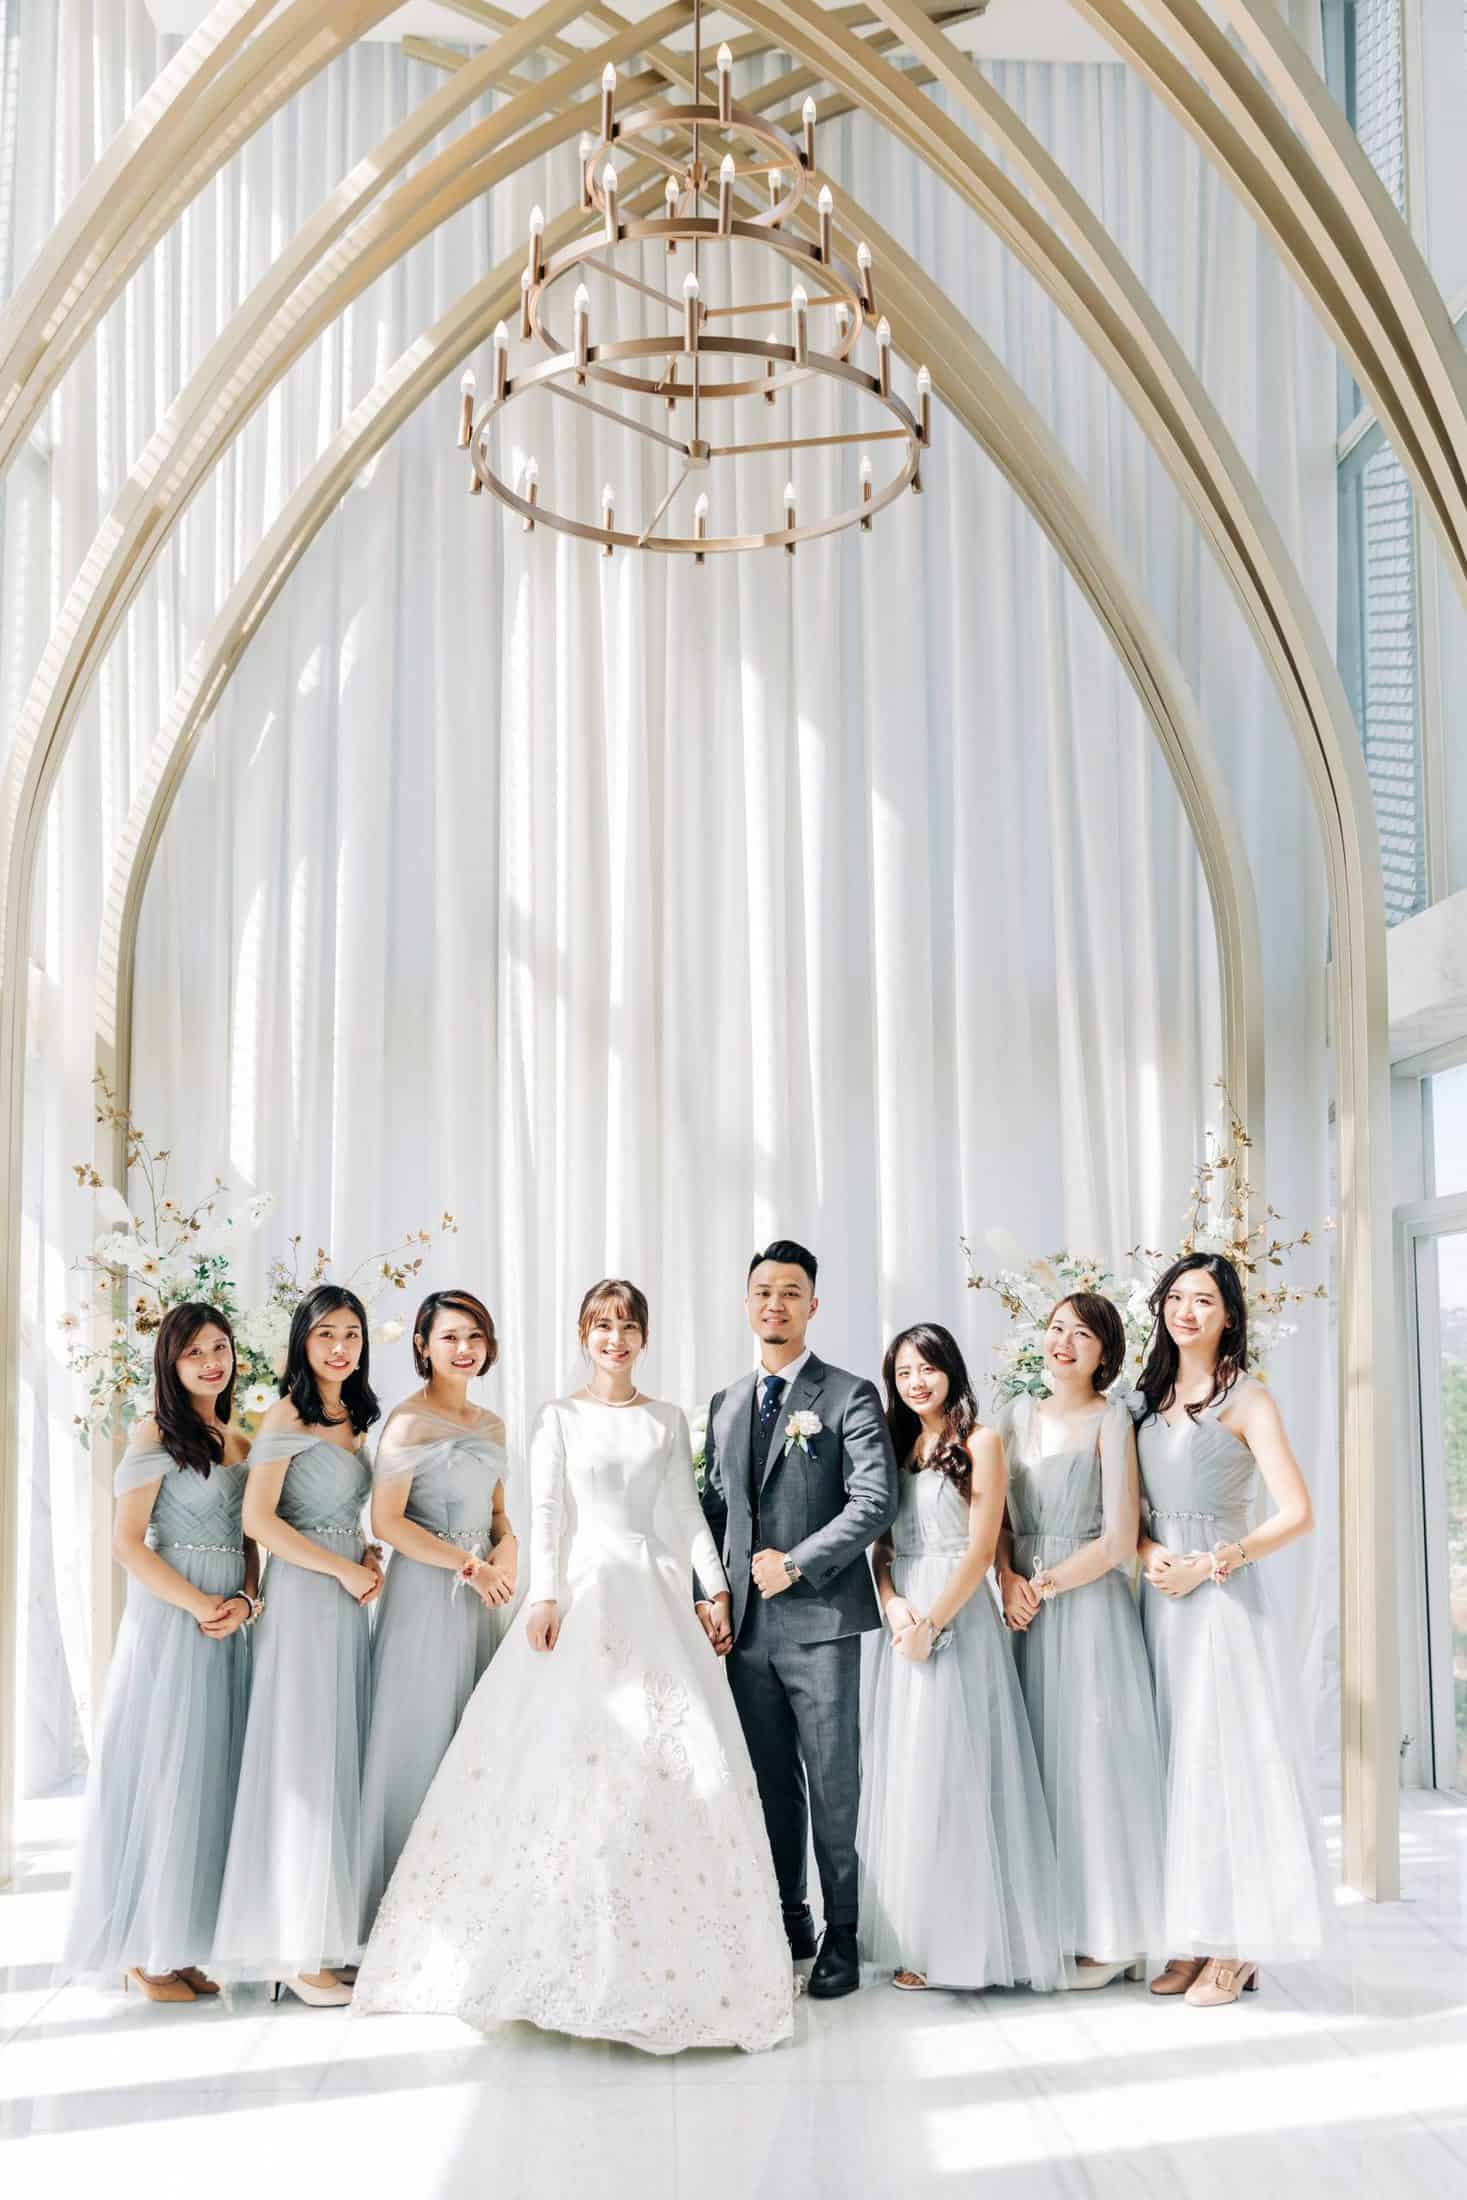 Amazing Grace攝影美學拍攝的萊特薇庭 御典閣婚禮攝影 以及 教堂證婚